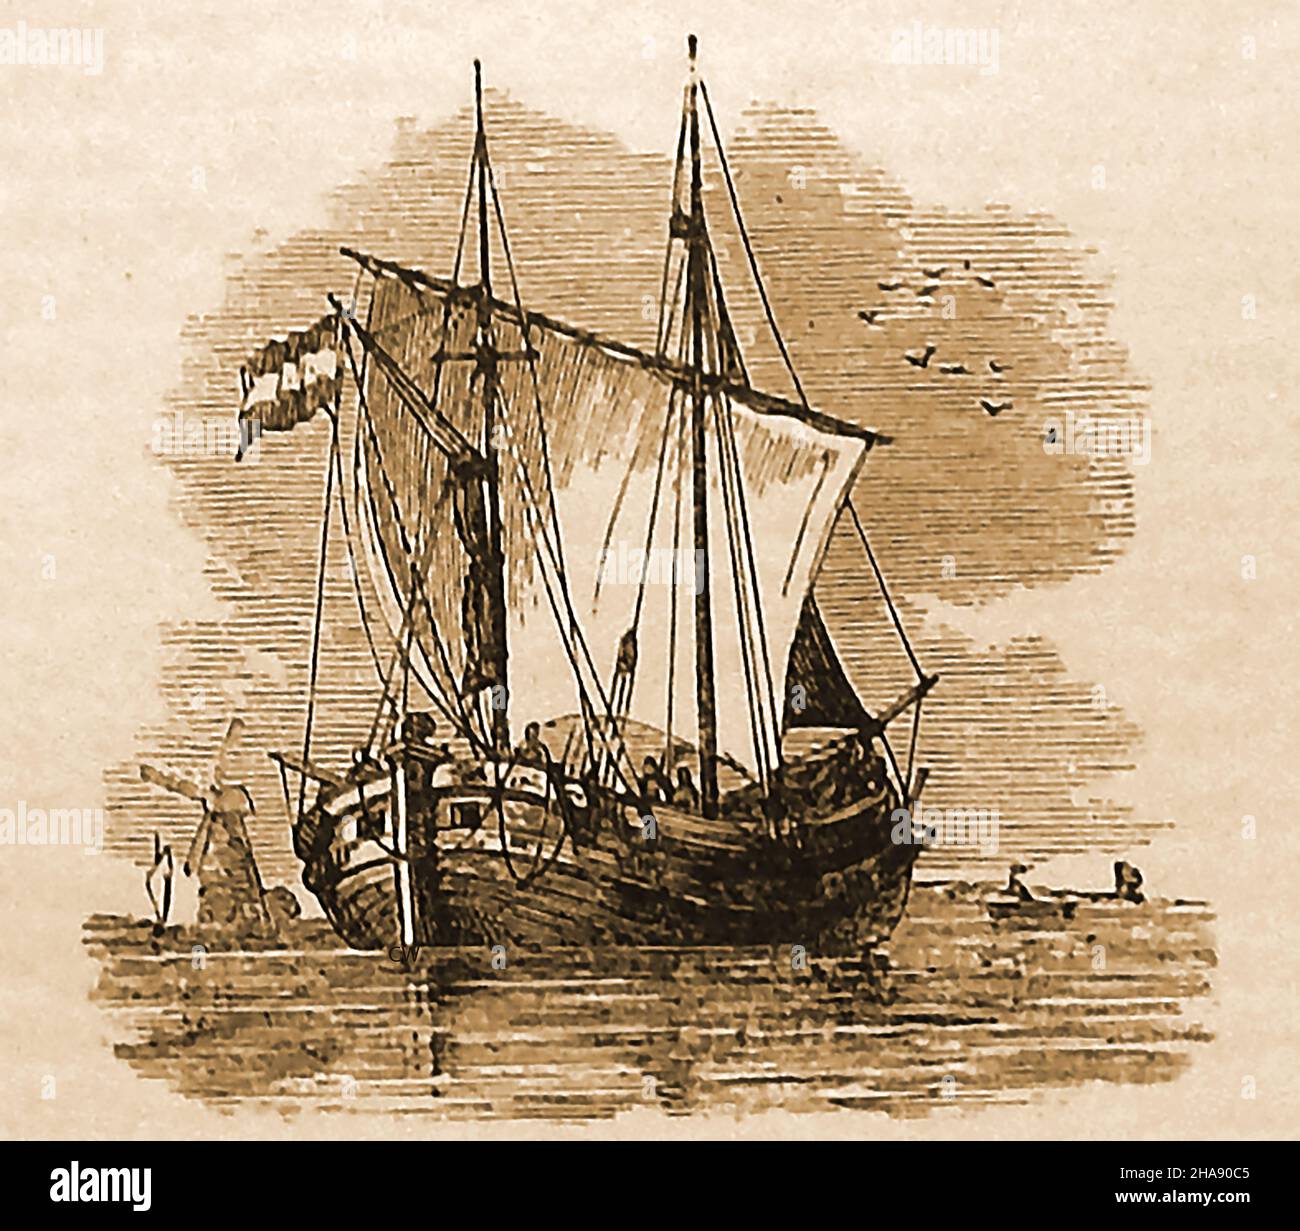 Illustration de la fin du siècle 19th d'un bateau de pêche hollandais connu sous le nom de DGGER.Utilisé principalement en mer du Nord, il était semblable à un clinker construit ketch mais gaff-truqué sur le mât principal, et portant une voile de patte sur le mizzen, avec deux flèches sur un long Bowscrit.La Marine royale britannique a utilisé certains de ces navires équipés de canons au cours du 17th siècle.Elle a également été utilisée comme transporteur de marchandises dans la Manche Banque D'Images